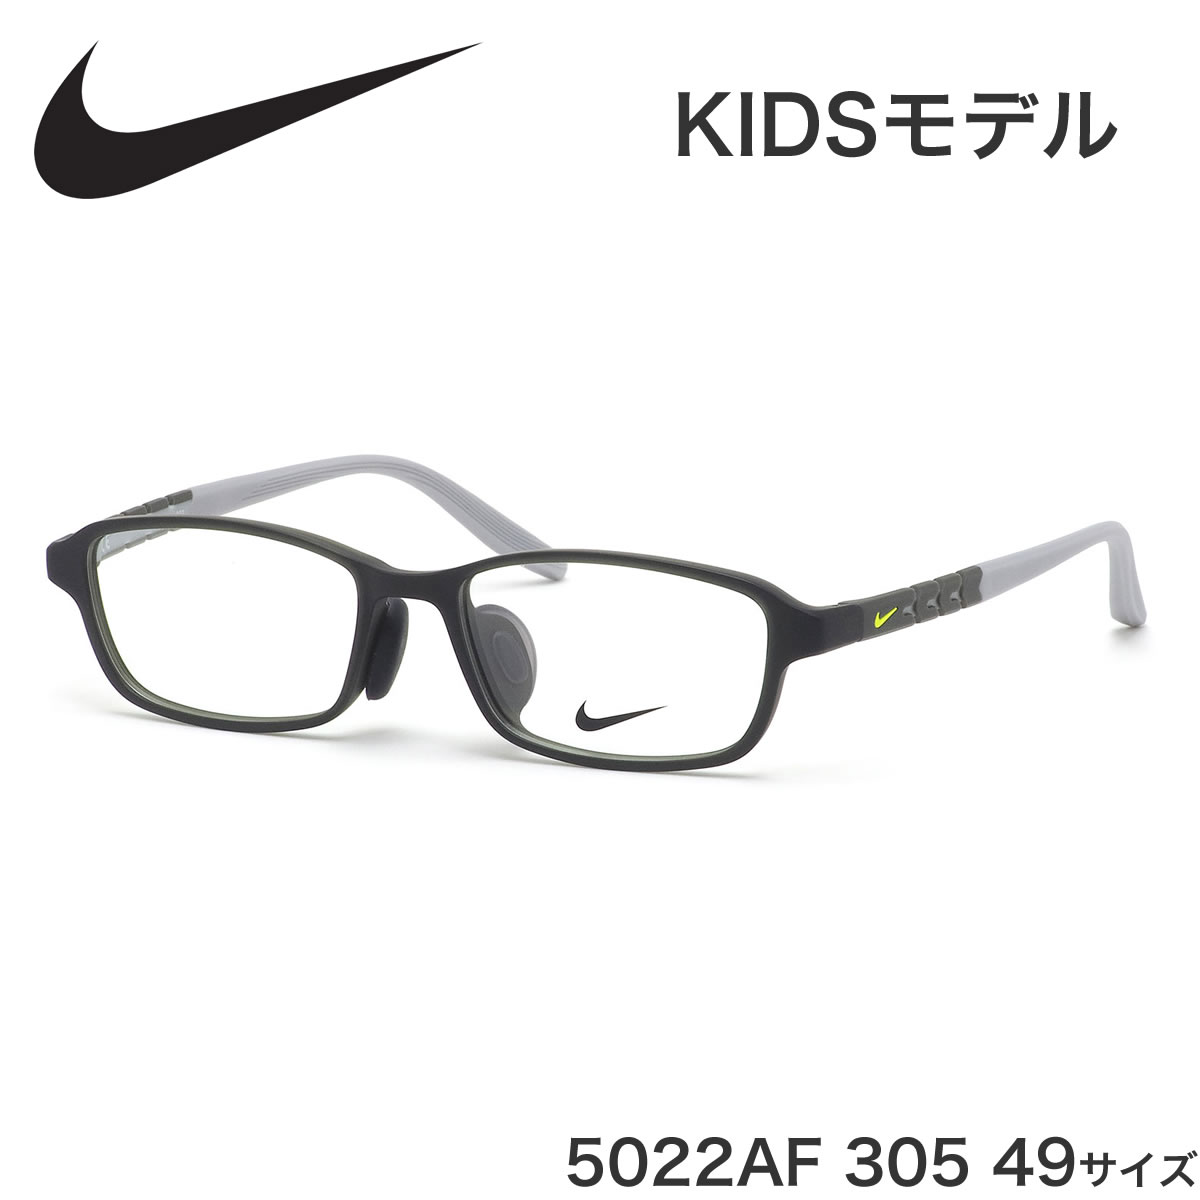 【楽天市場】ナイキ NIKE キッズ用メガネ 5022AF 305 49サイズ